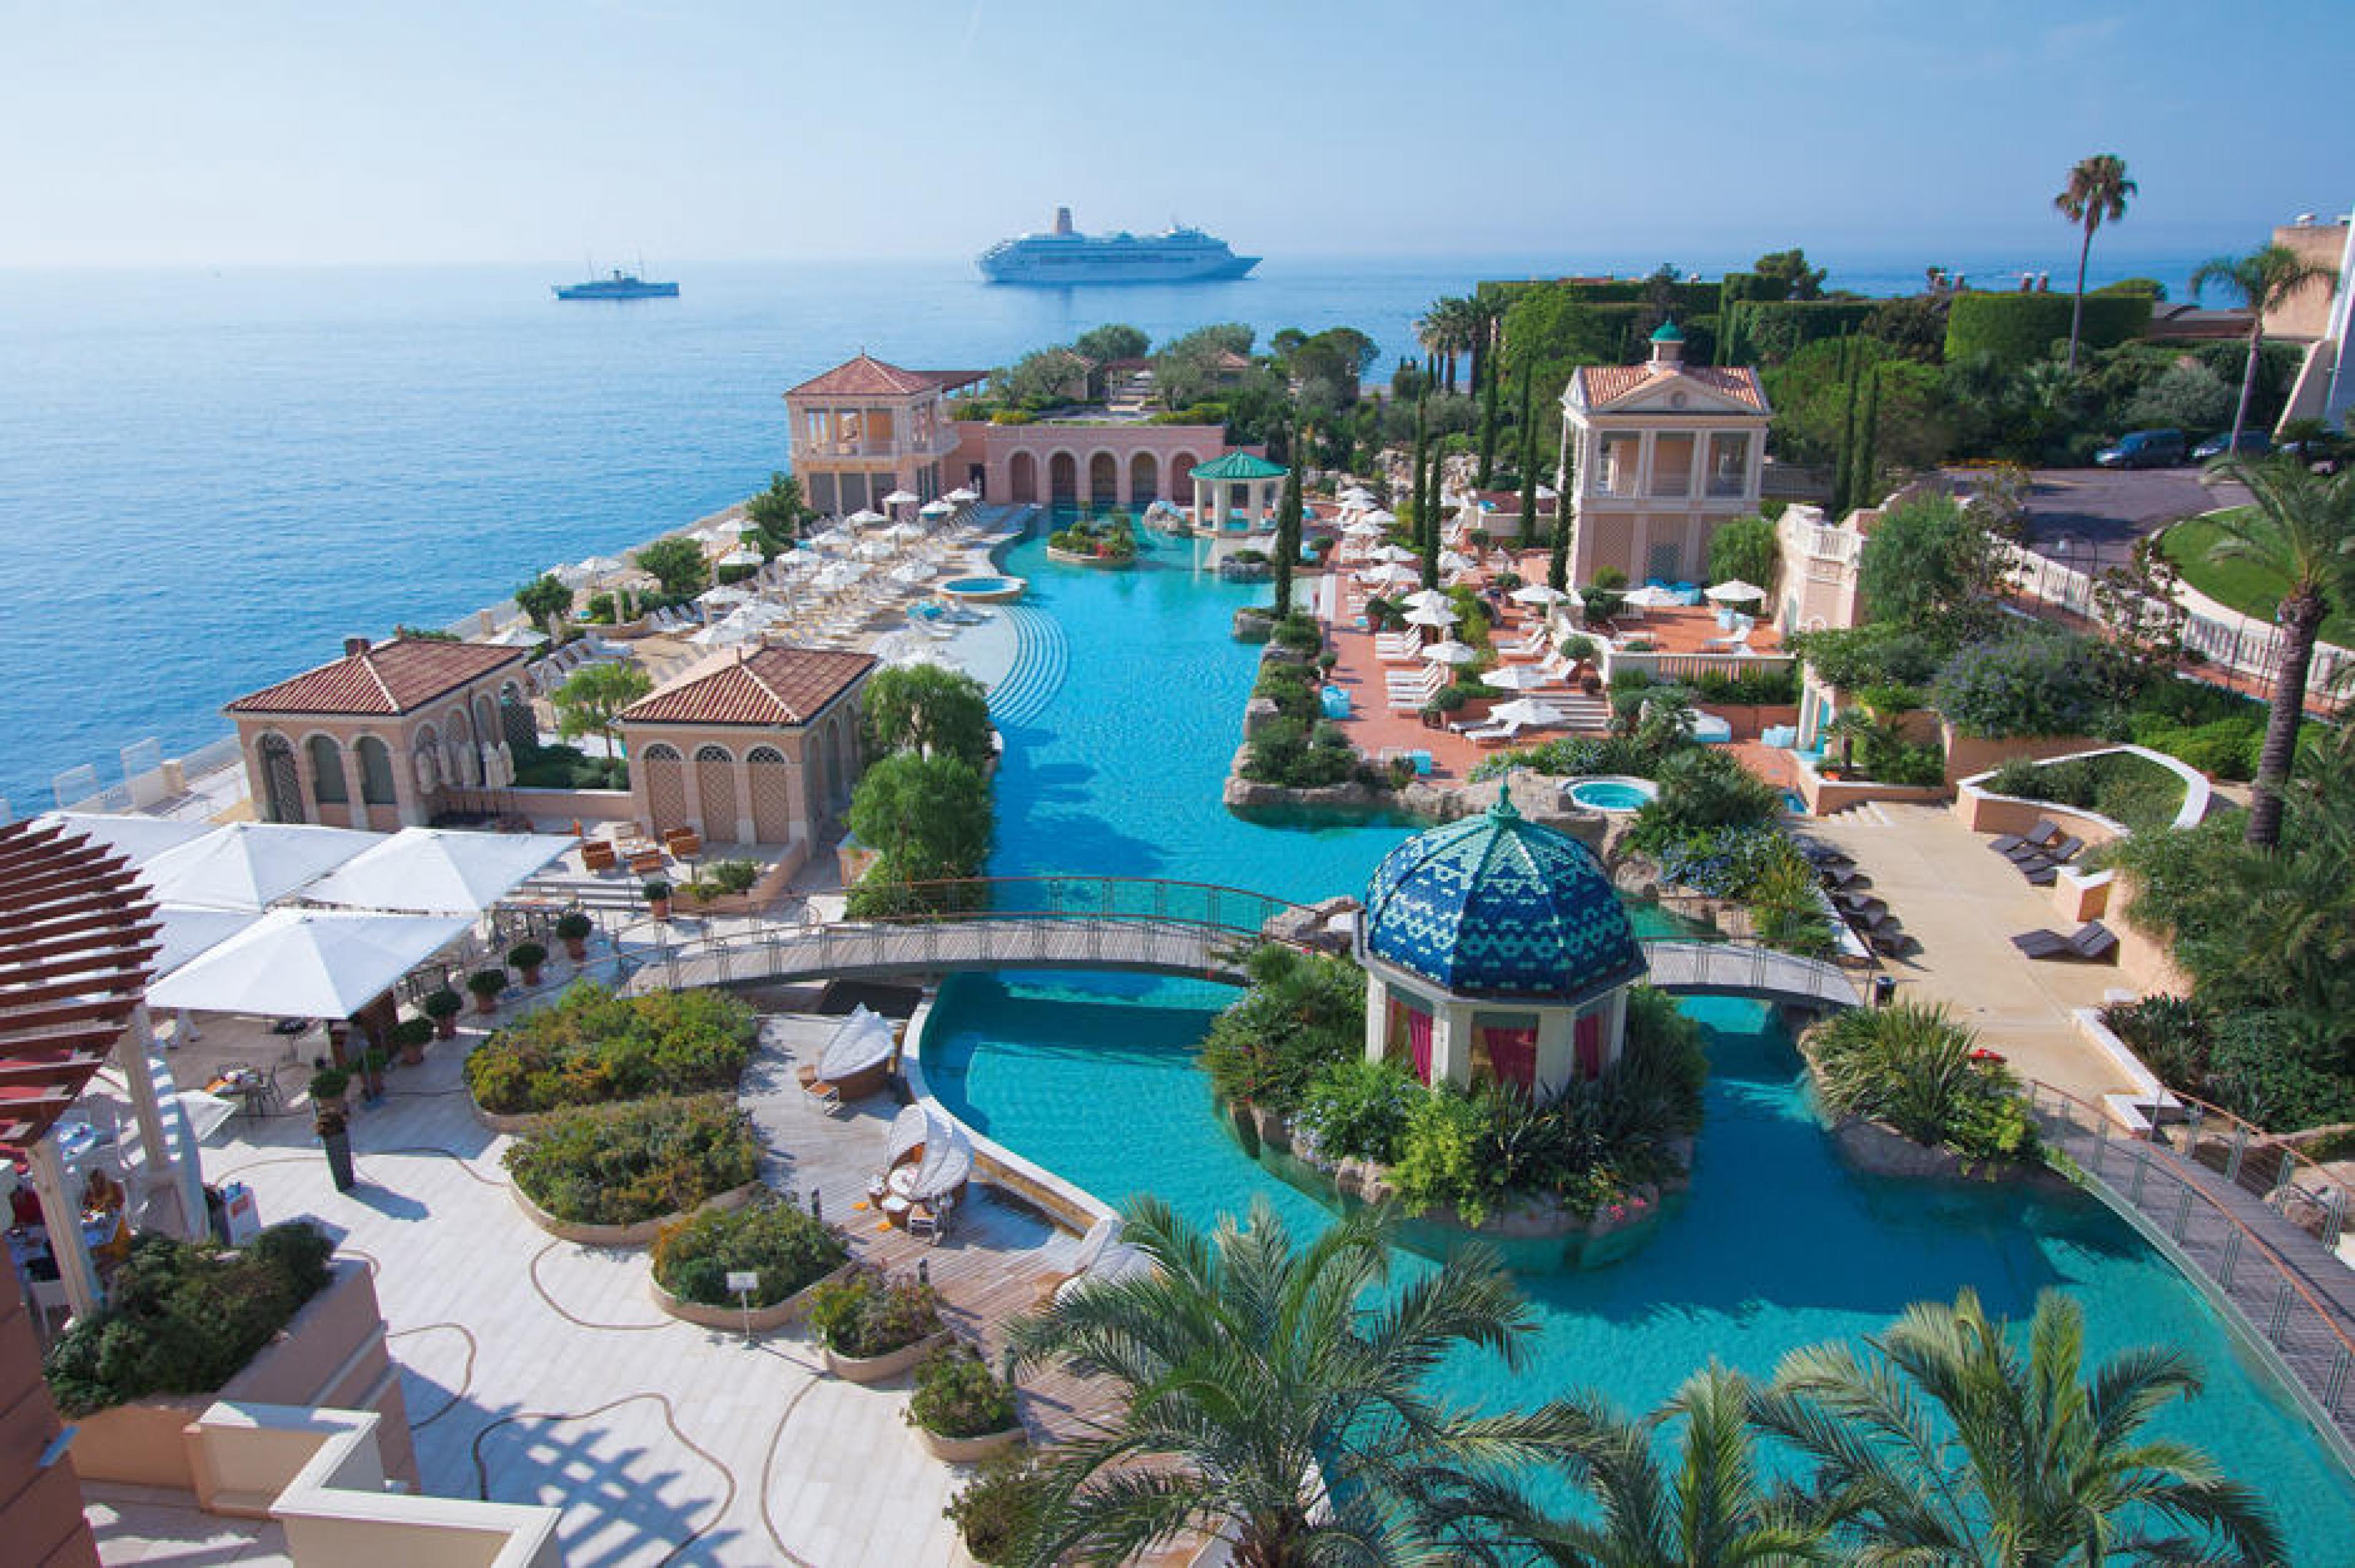 Aerial View - Monte-Carlo Bay Hotel & Resort, Monaco